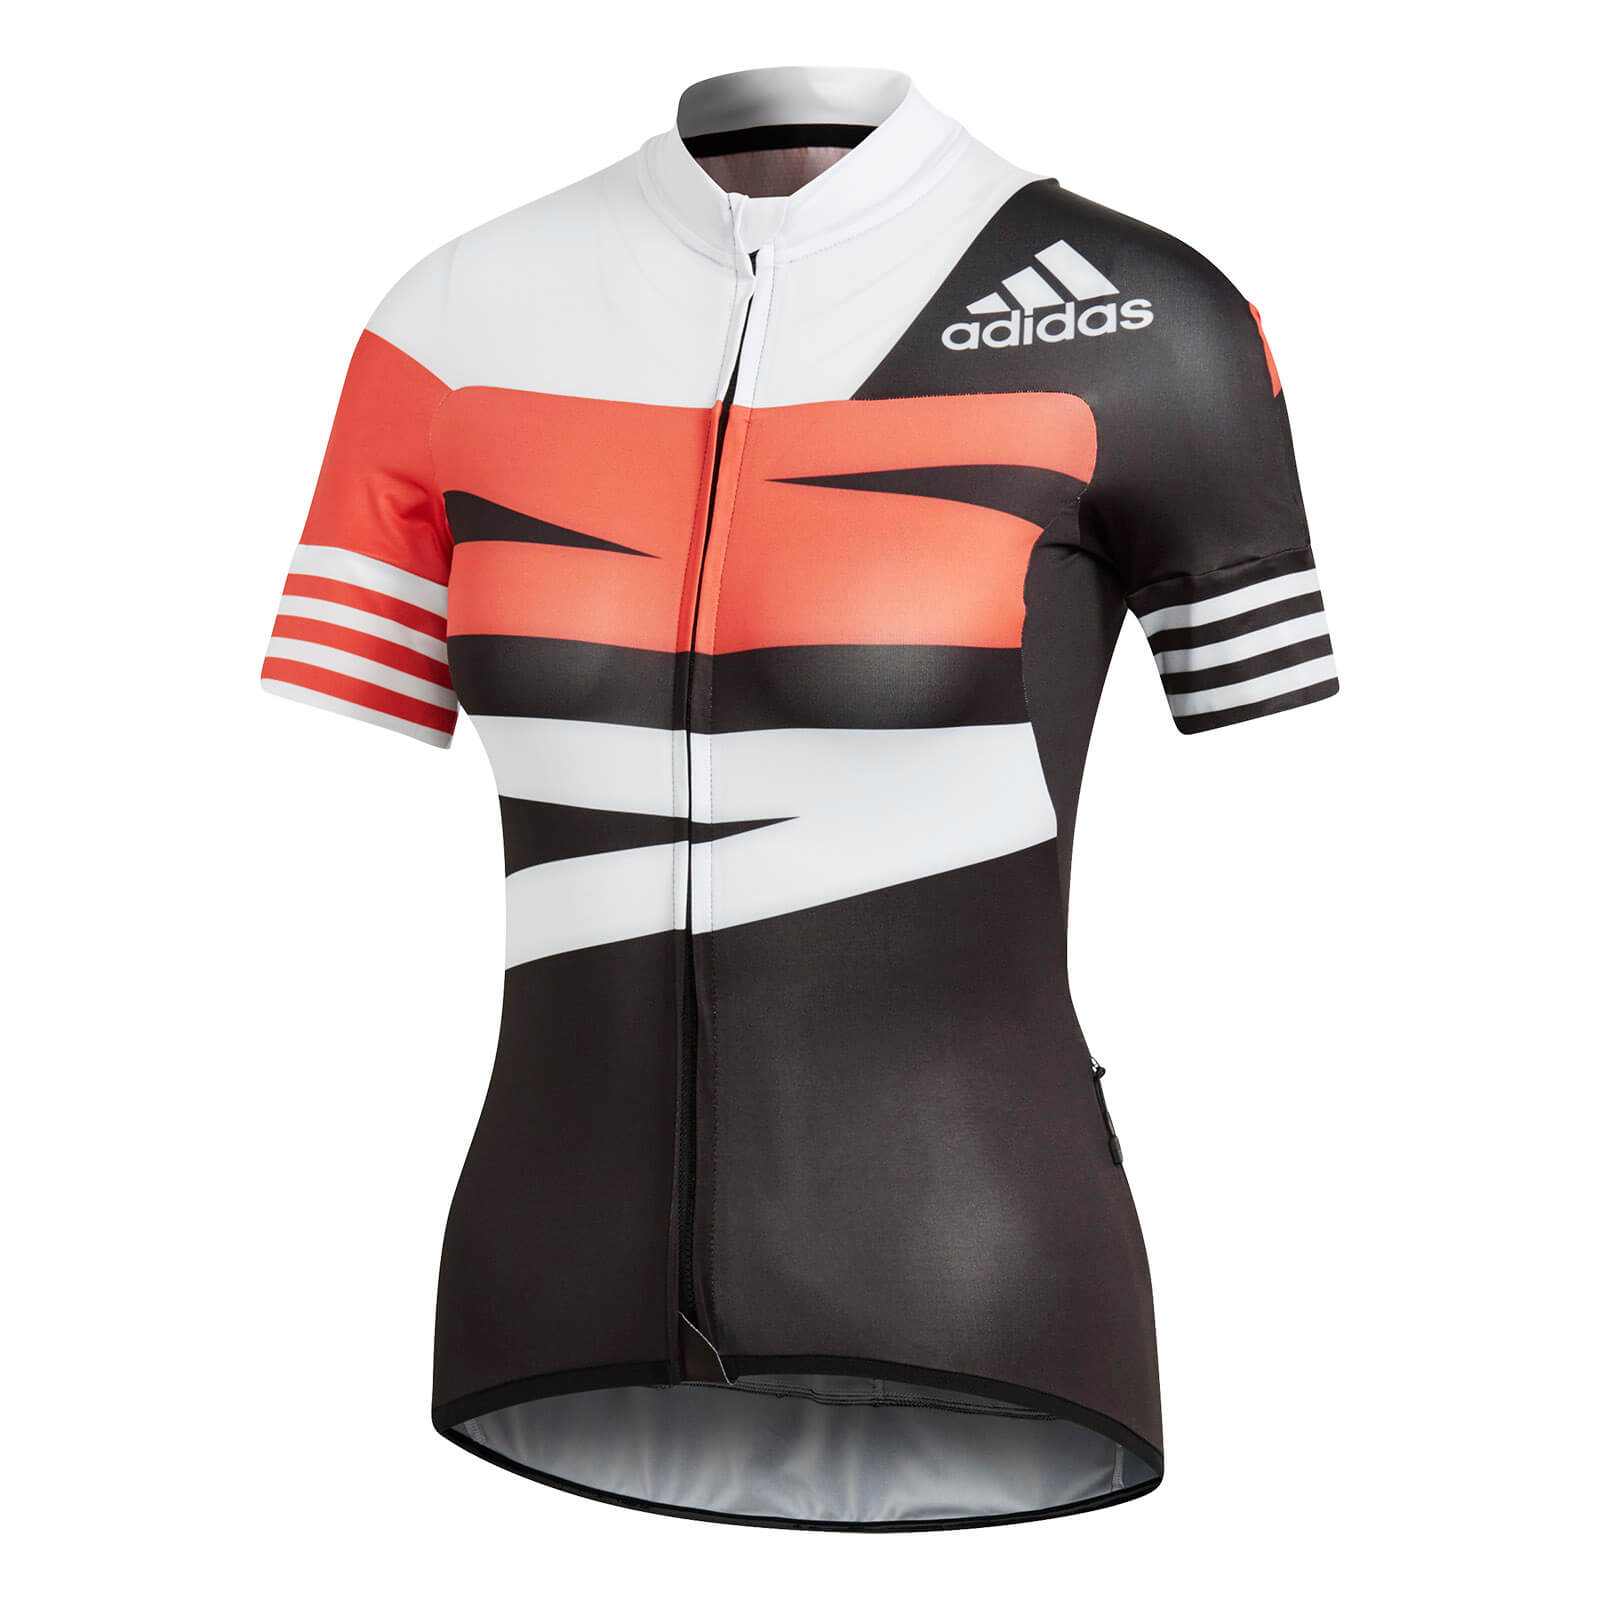 adidas cycling jersey